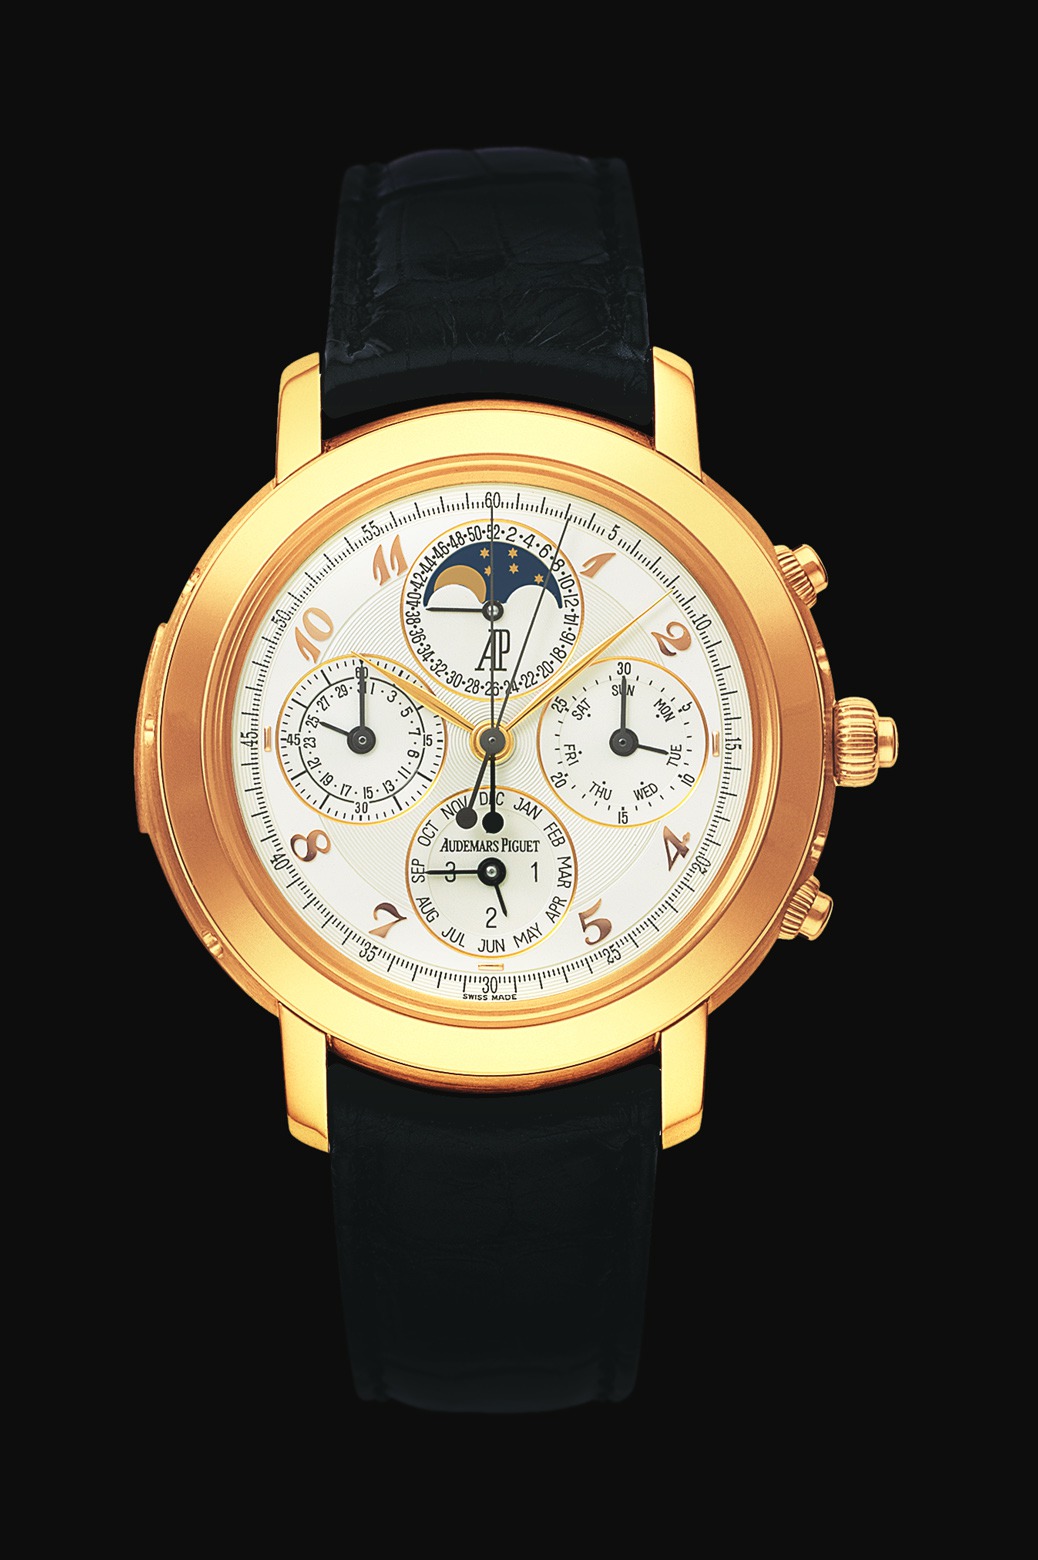 Audemars Piguet Jules Audemars Grande Complication Pink Gold watch REF: 25866OR.OO.D002CR.02